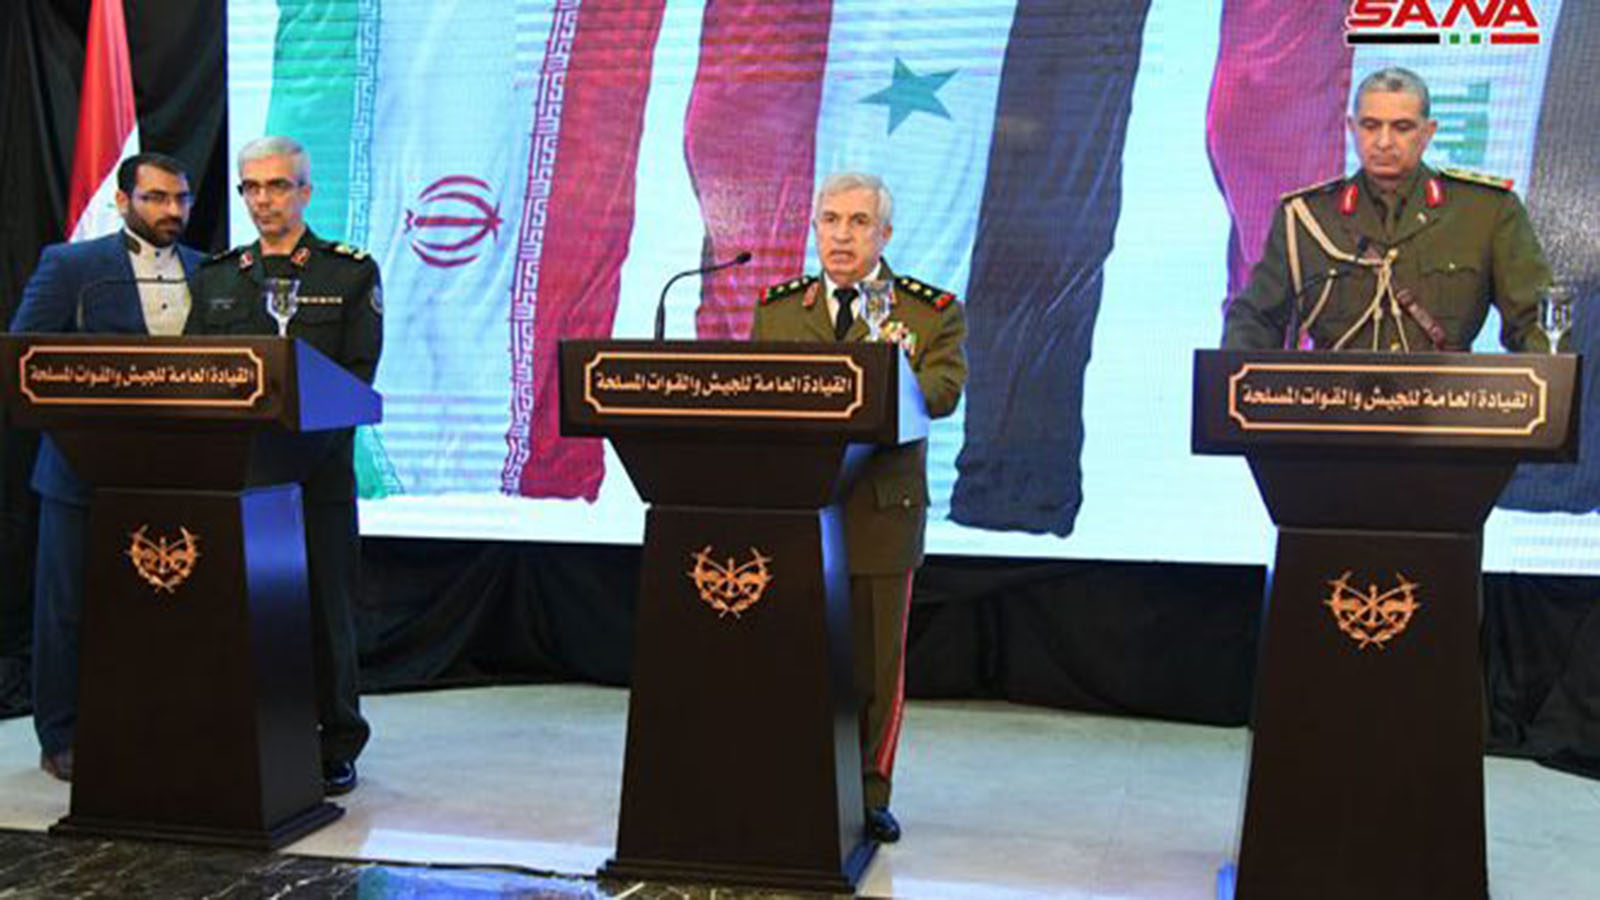 الثلاثي العسكري السوري العراقي الايراني:الحدود أولوية!